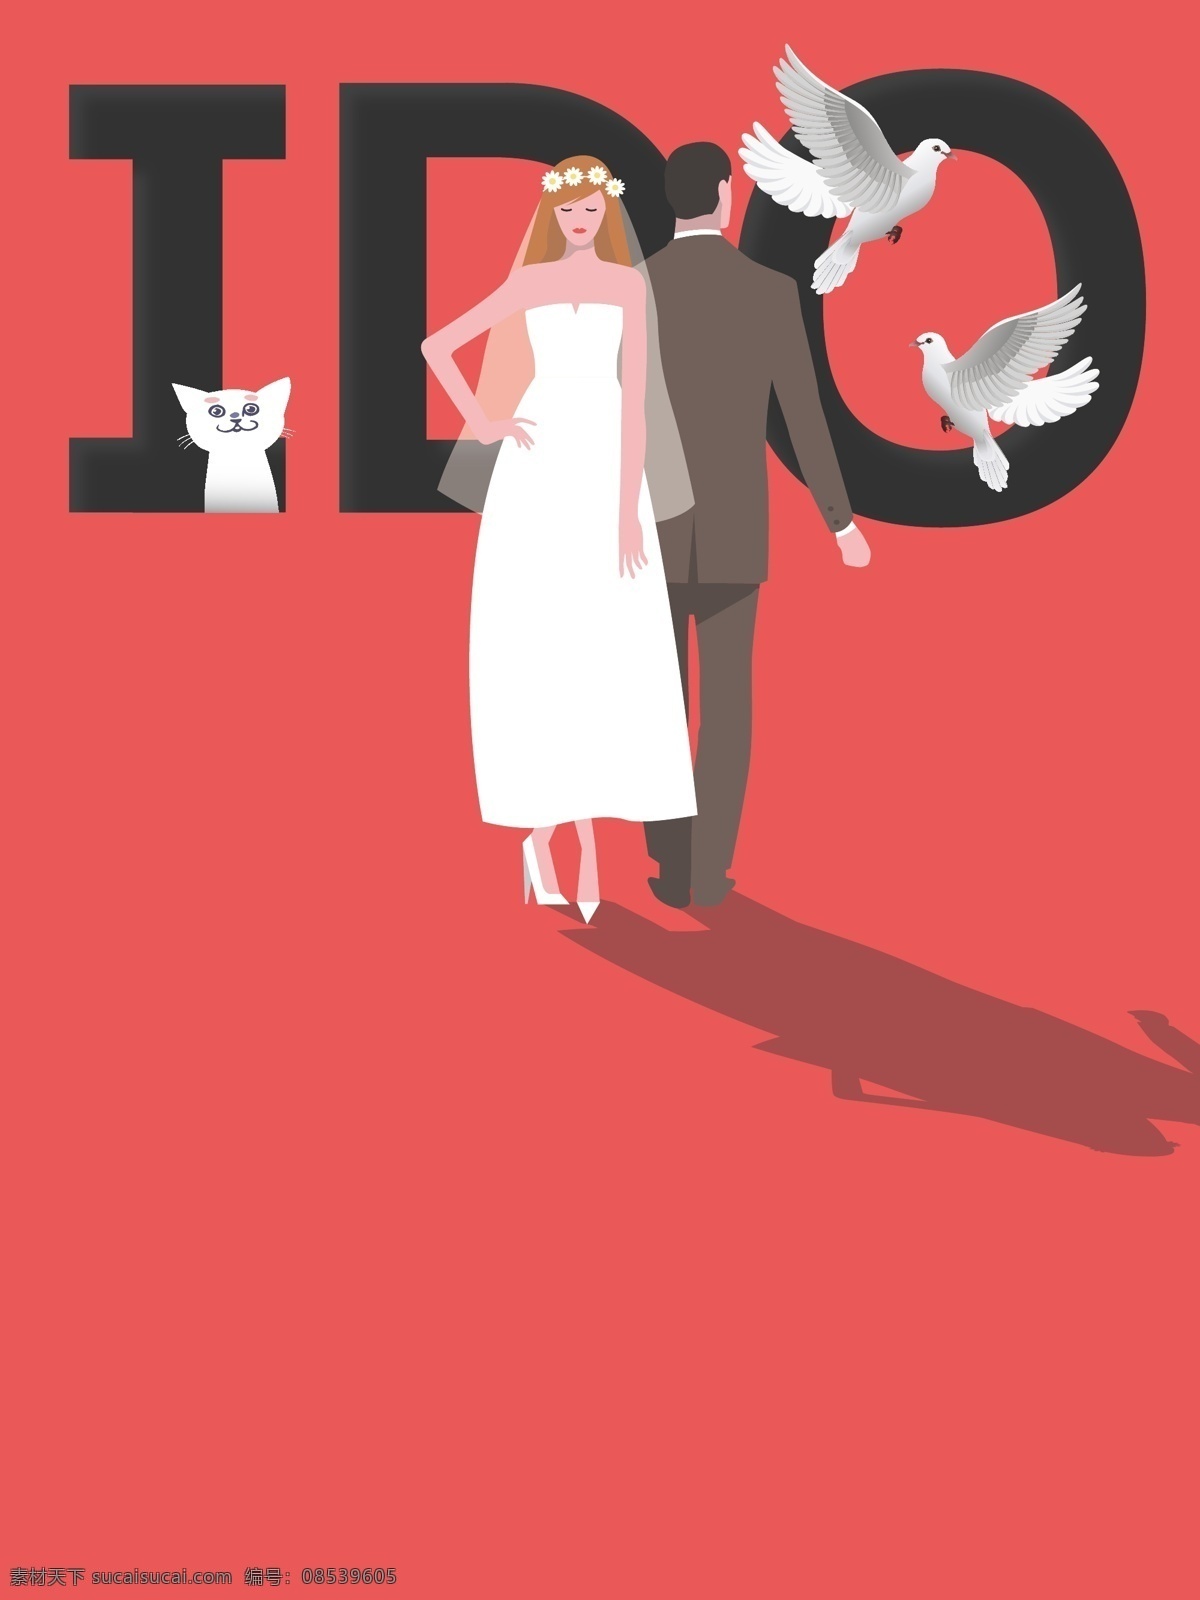 红色 矢量 插画 婚礼 海报 背景 创意 简约 婚庆 新人 甜蜜 矢量人物 商业海报 矢量插画